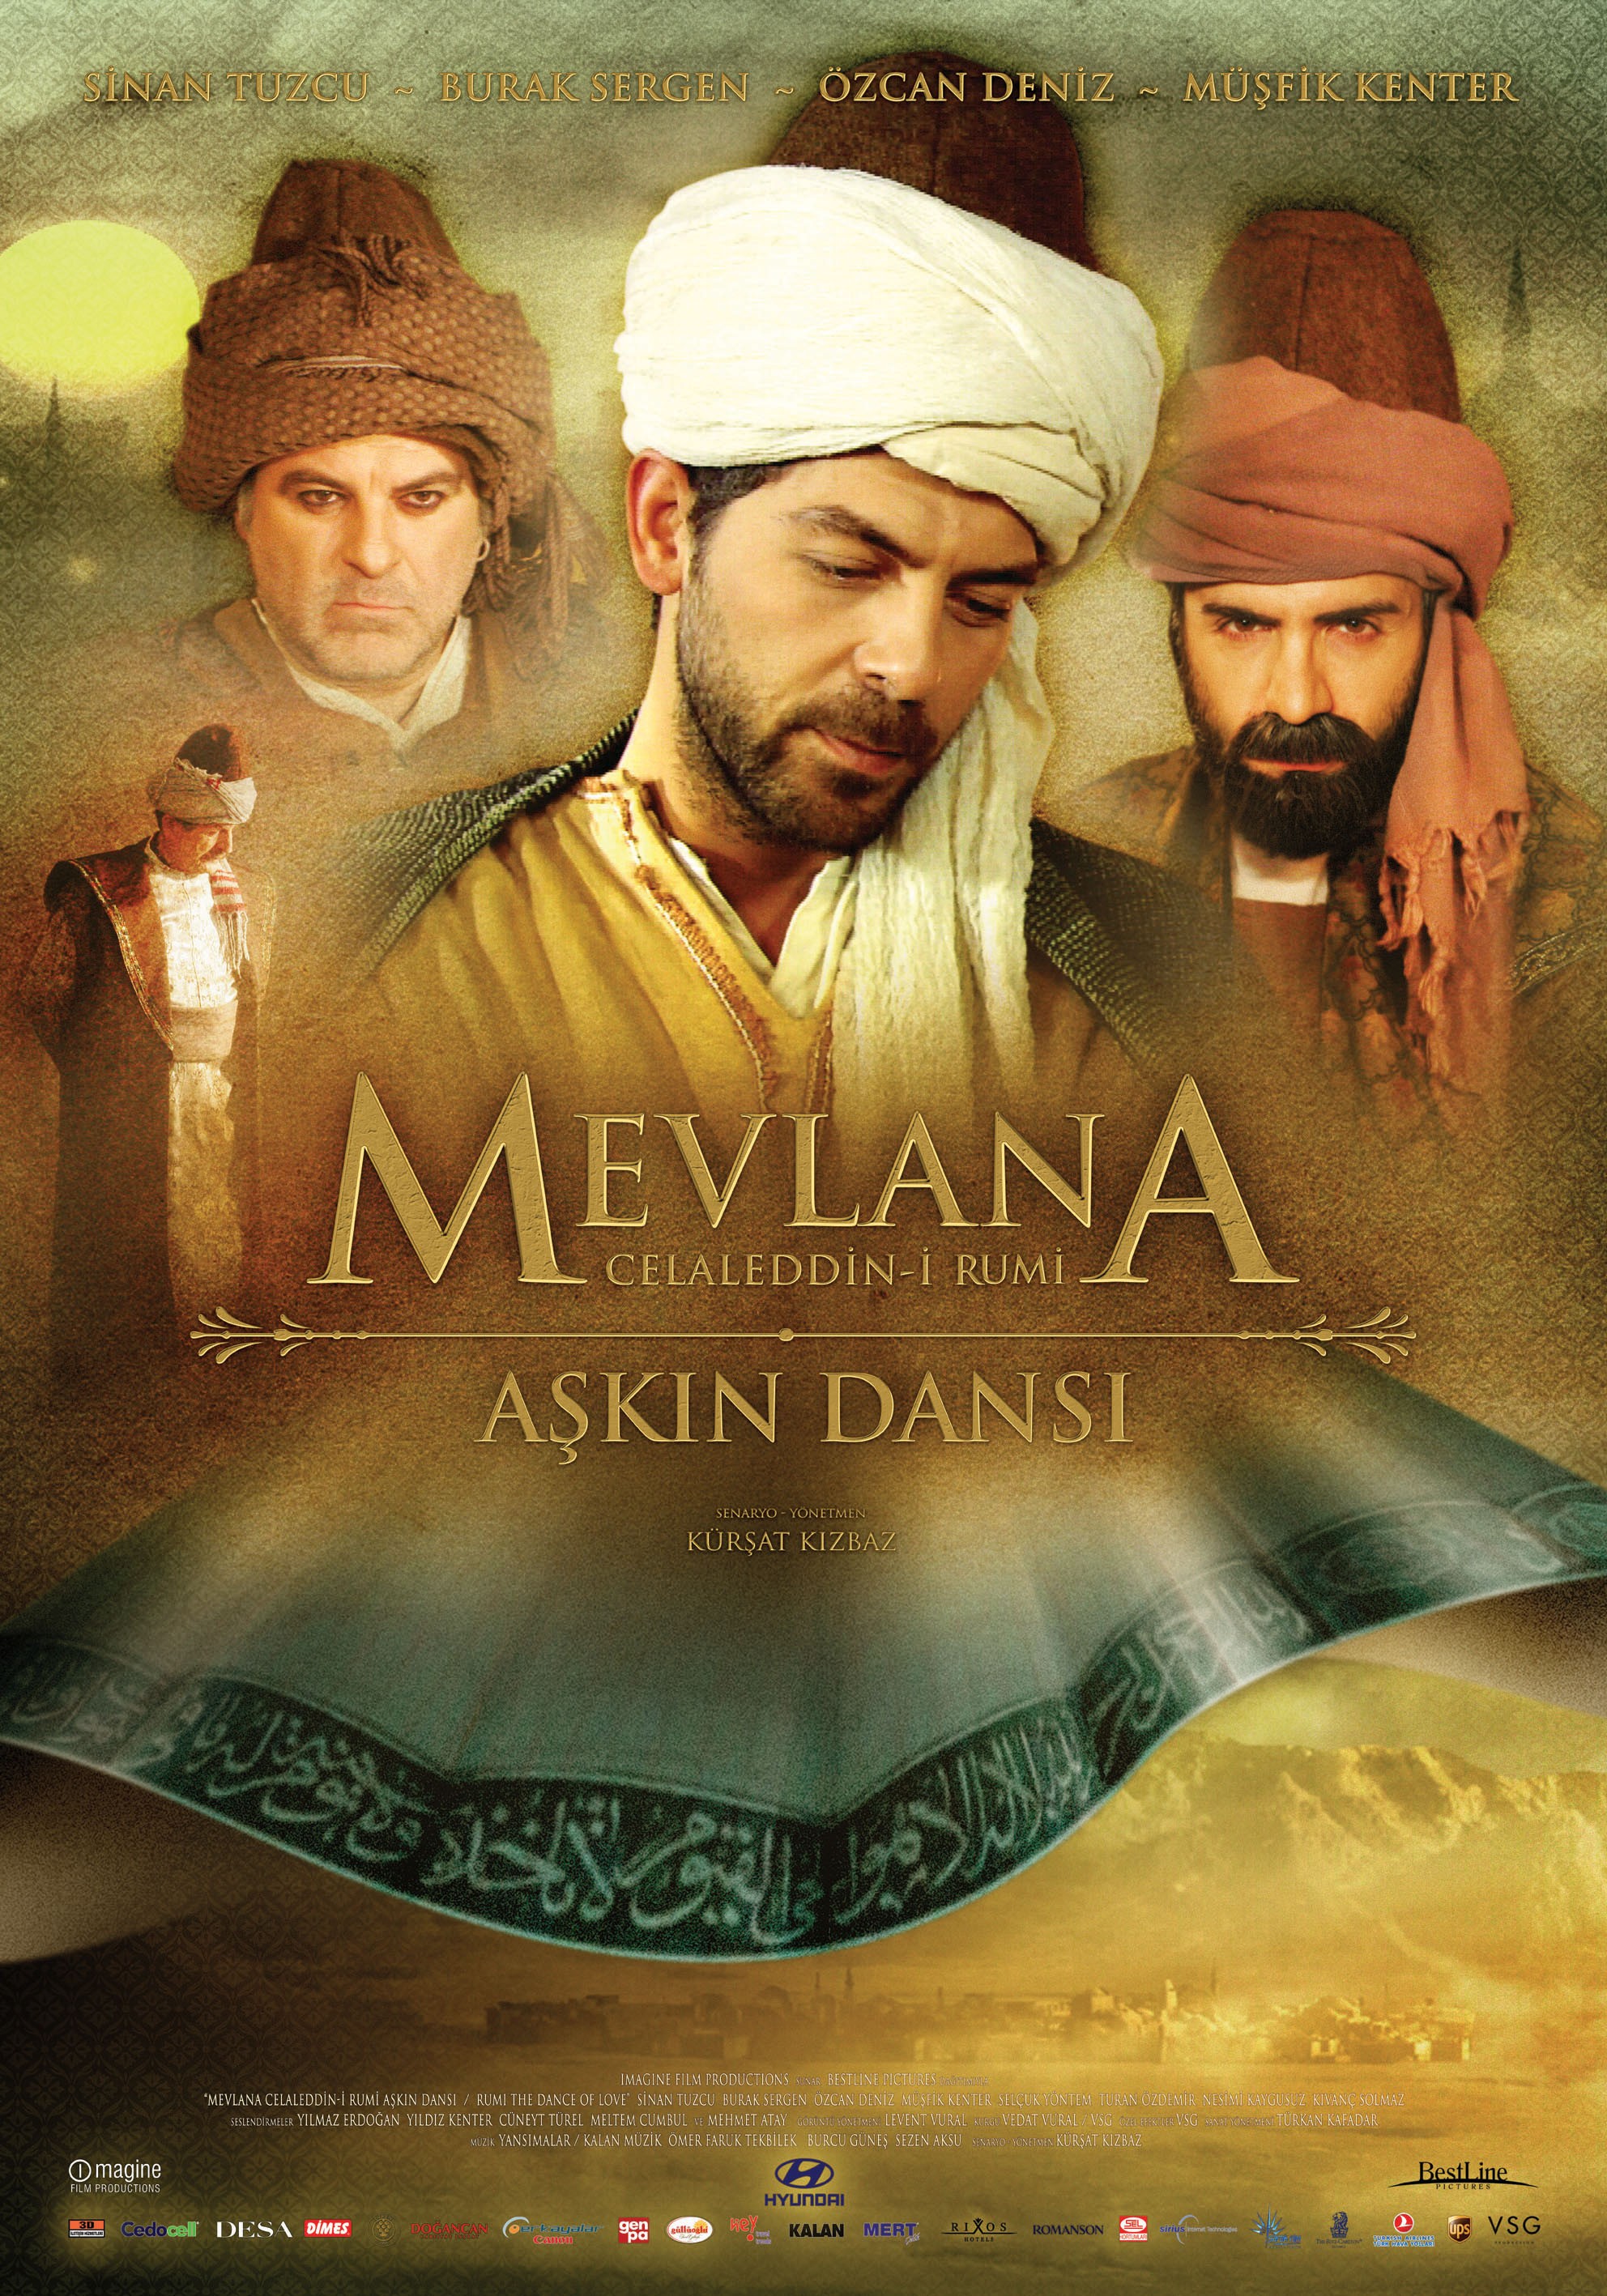 Mega Sized Movie Poster Image for Mevlana Celaleddin-i Rumi: Askin dansi 